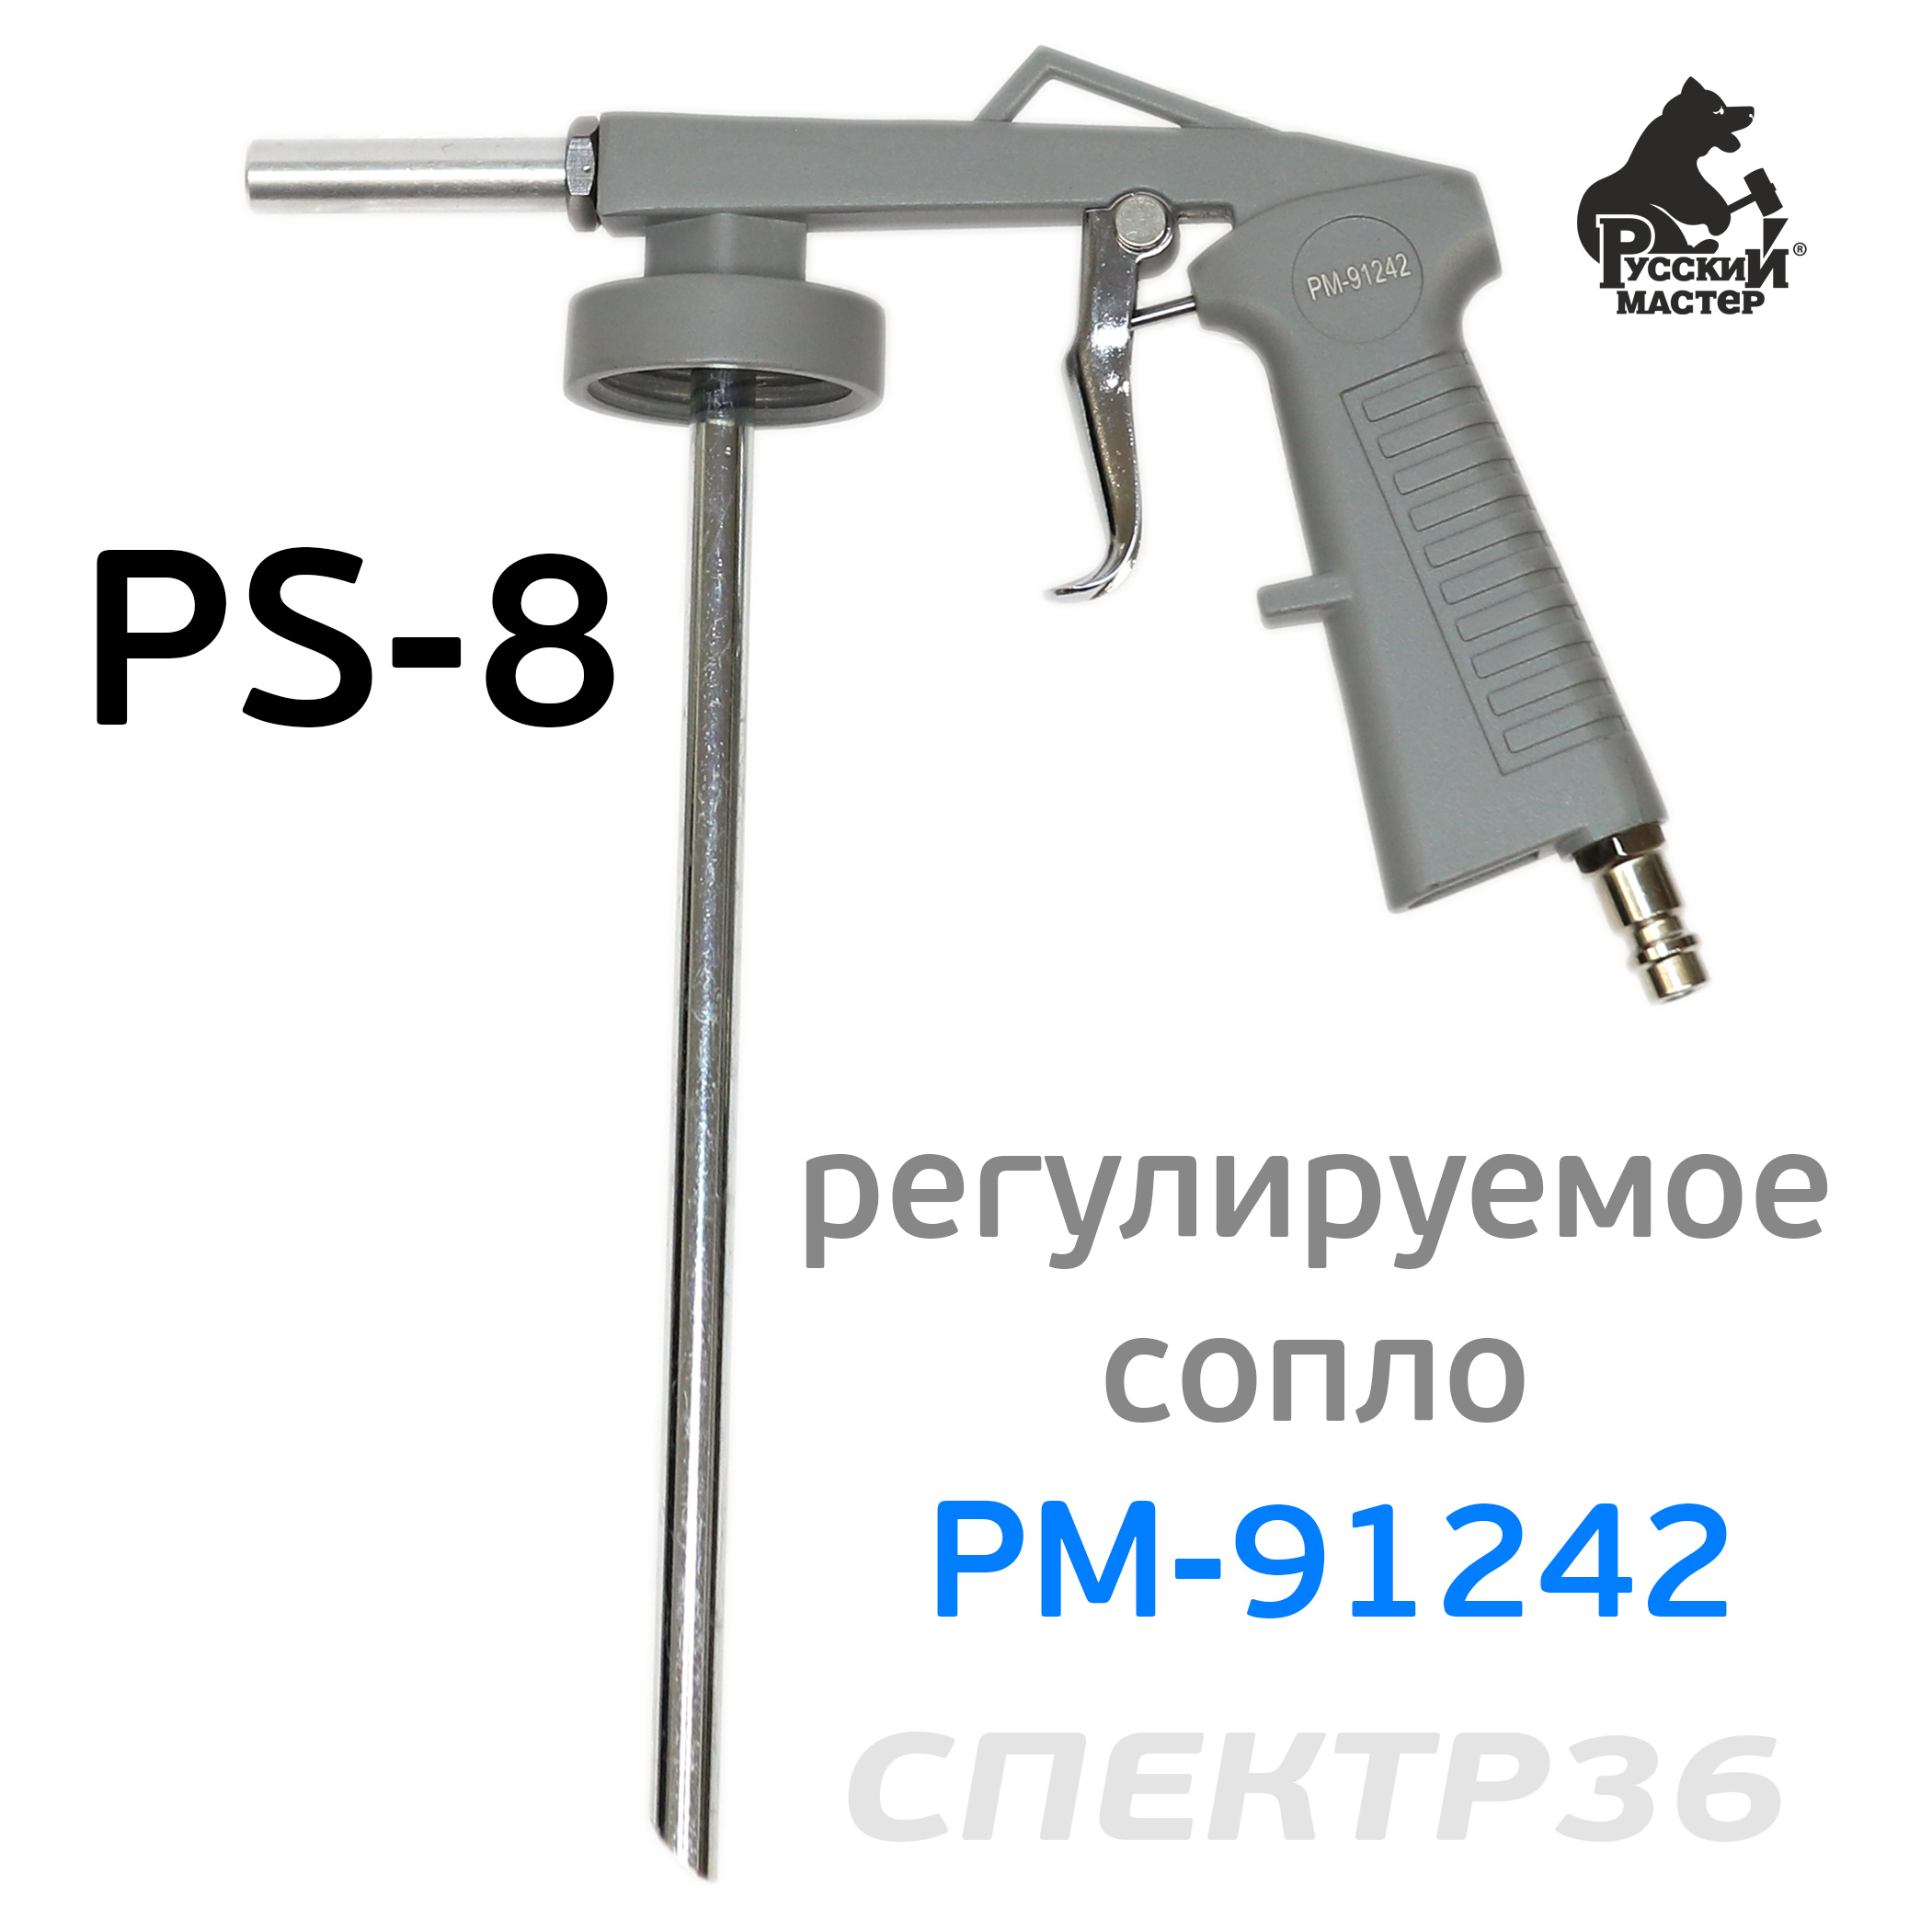  для антигравия РМ-91242 (PS-8) с регулировкой сопла Русский Мастер